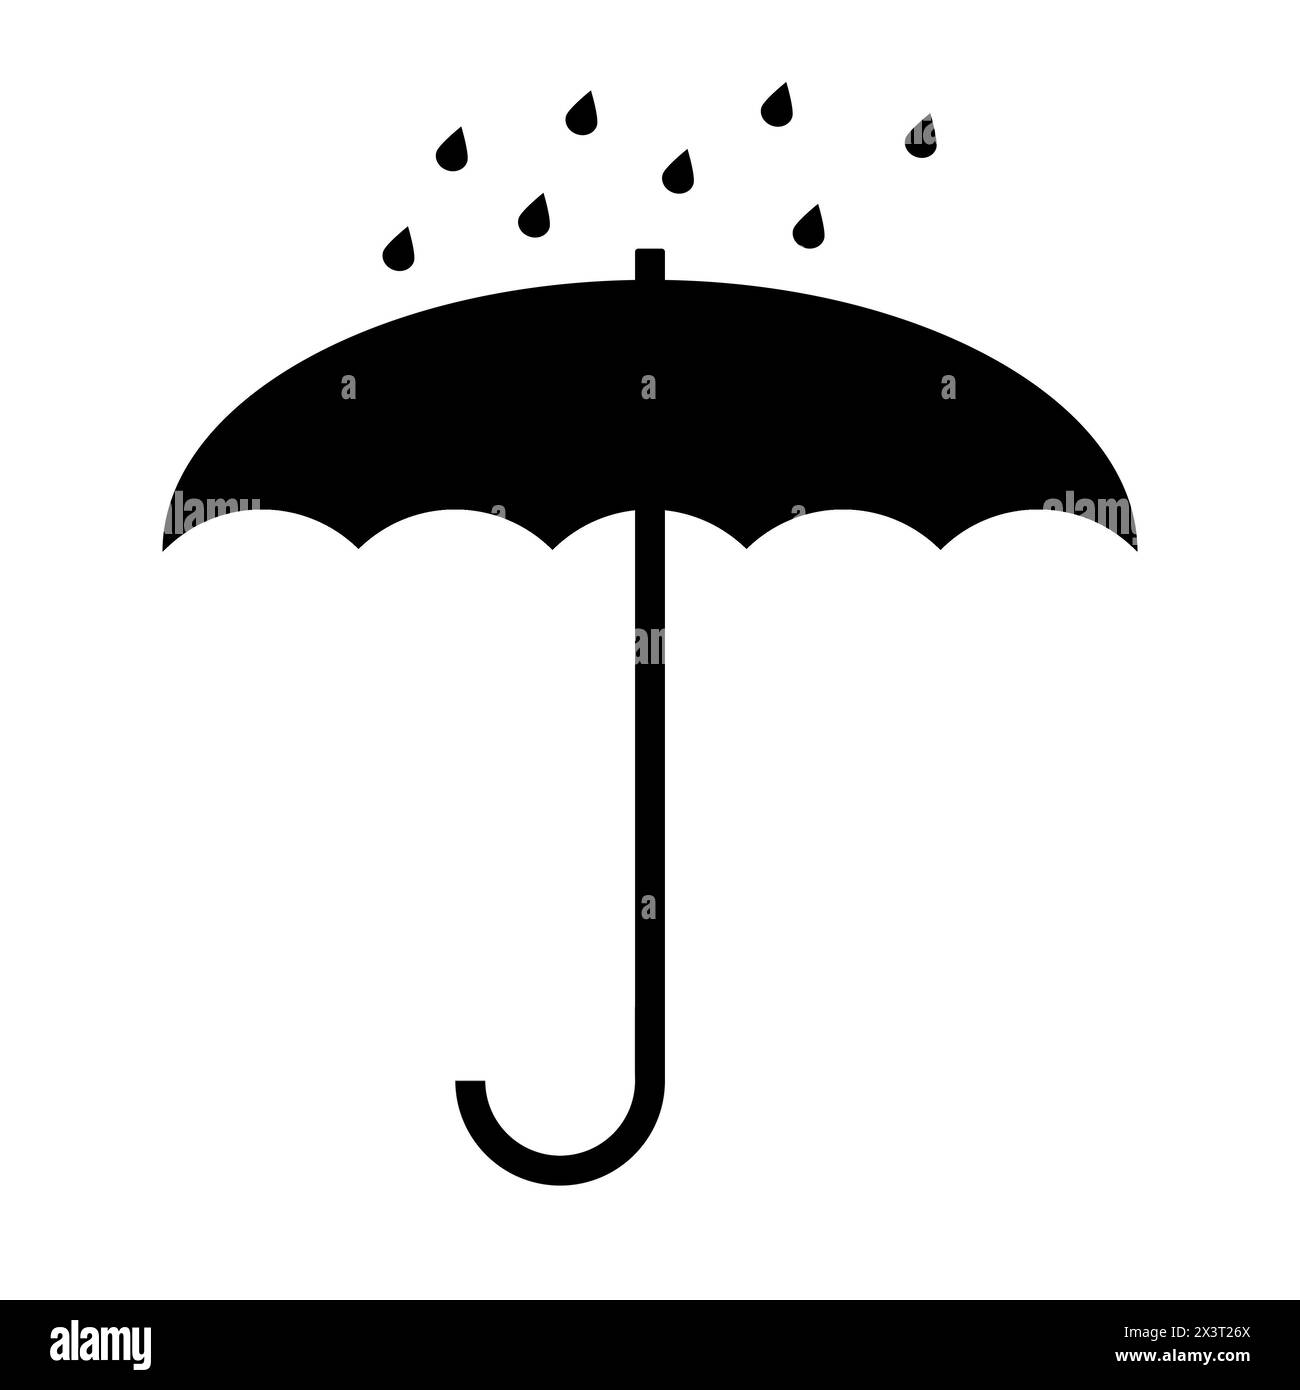 Schwarzer Regenschirm mit Regentropfen-Symbol. Schlichtes Schwarz-weiß-Symbol, das einen offenen Regenschirm unter leichtem Regen darstellt. Feuchtigkeitsschutz. Stockfoto